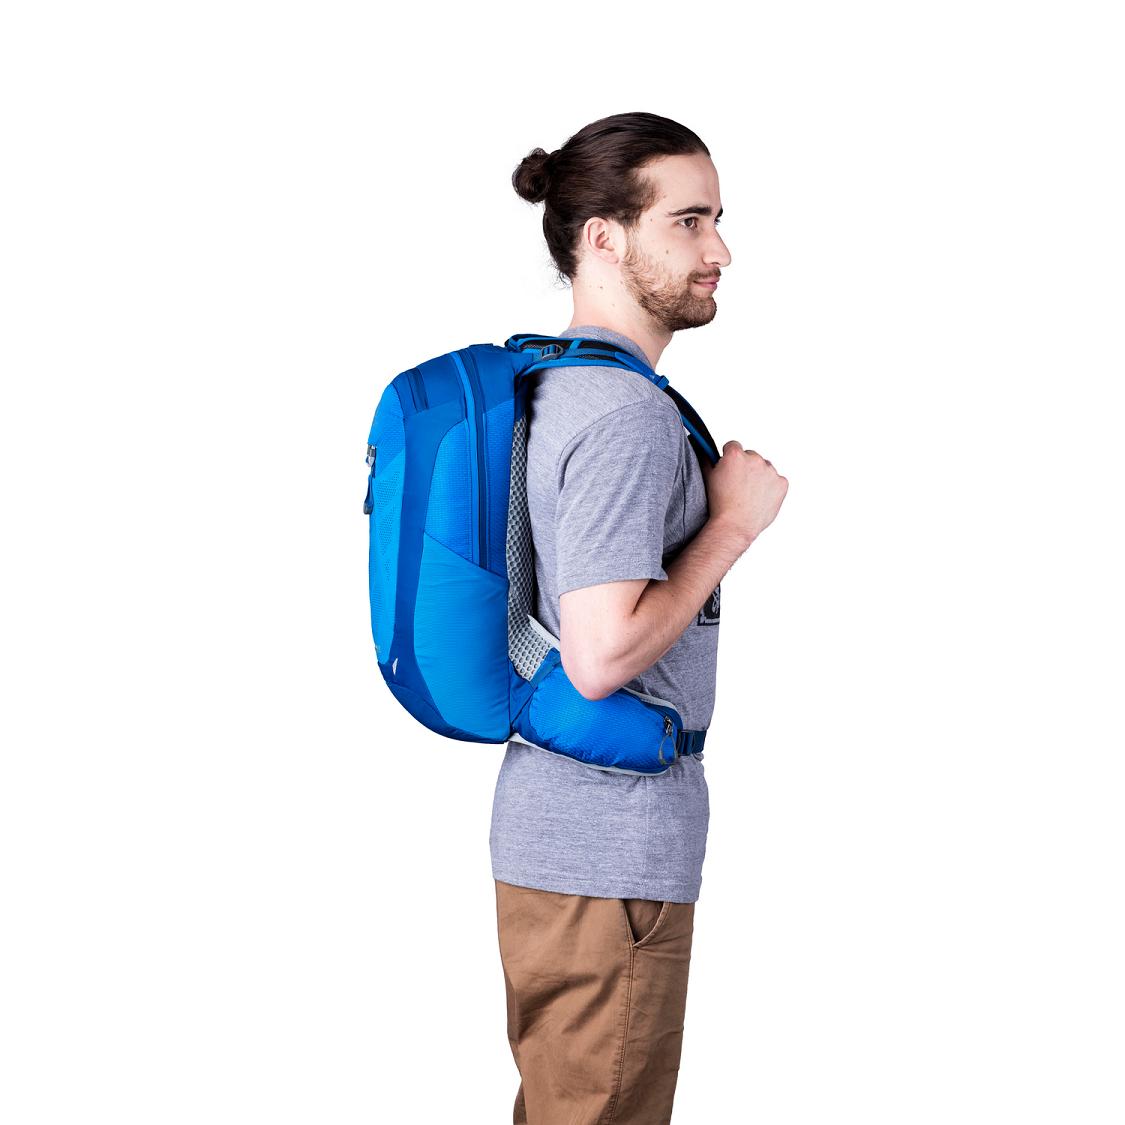 Men Gregory Miwok 12 Hiking Backpack Blue Usa RVJS87954